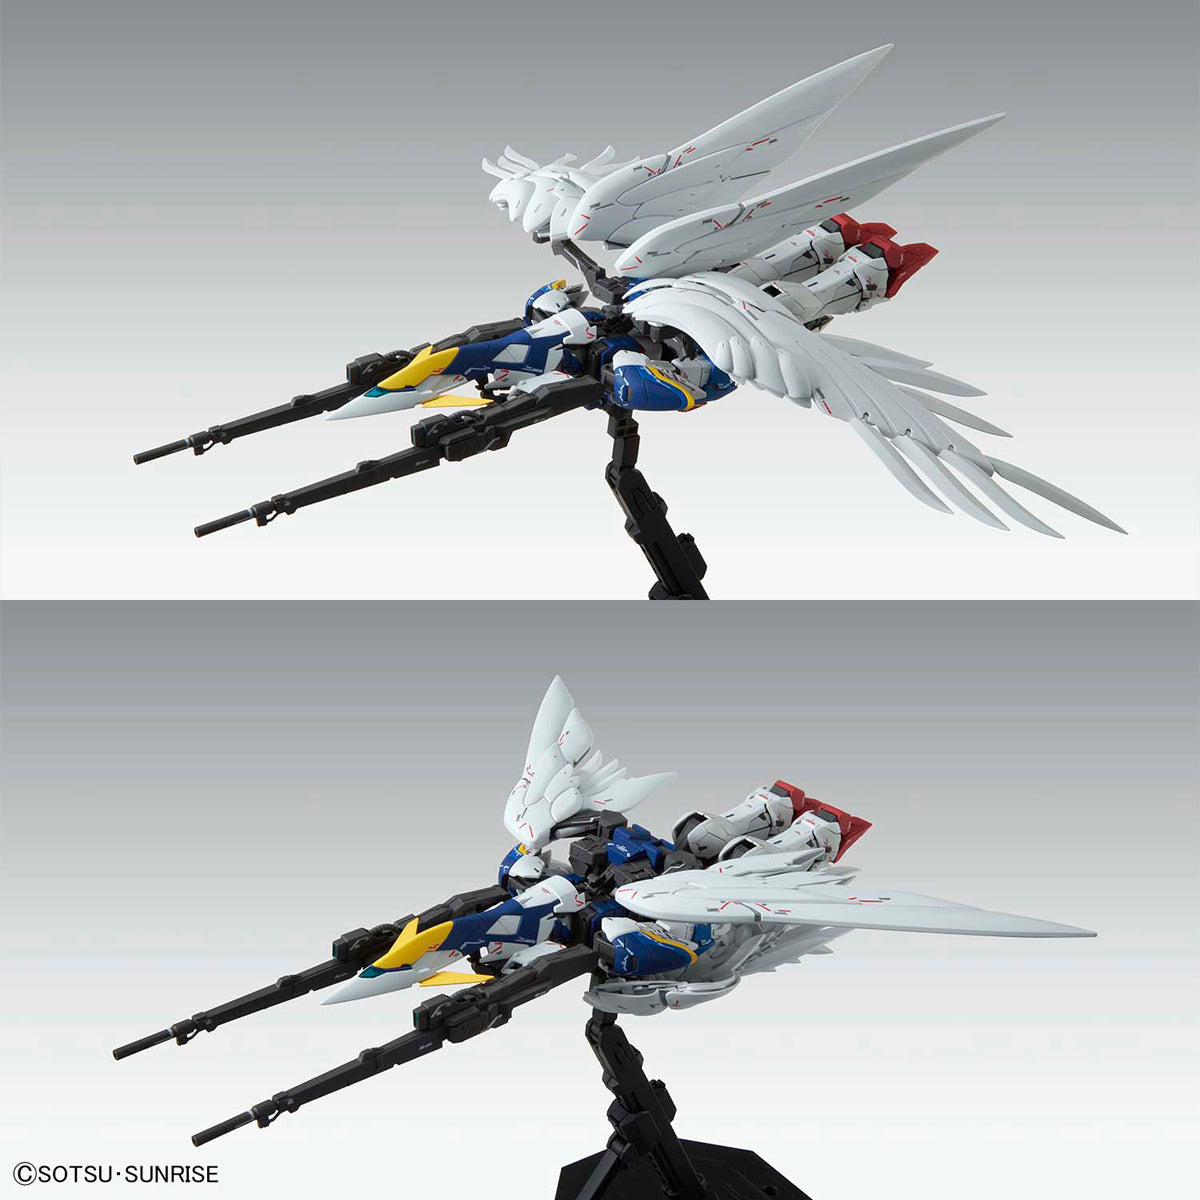 MG - XXXG-00W0 Wing Gundam Zero EW Ver.Ka